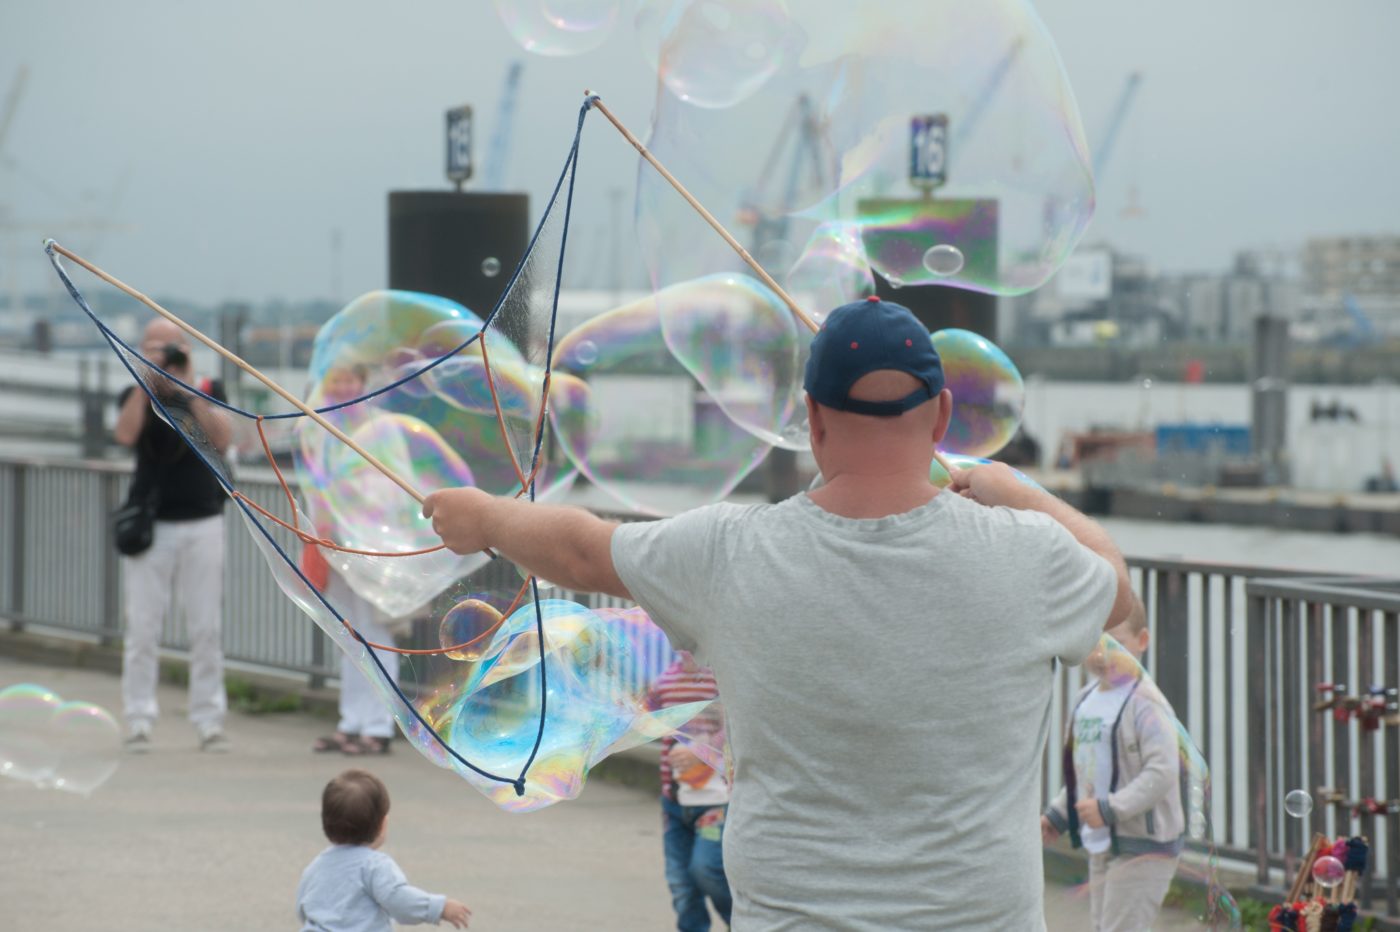 city break: artist making bubbles for tourists